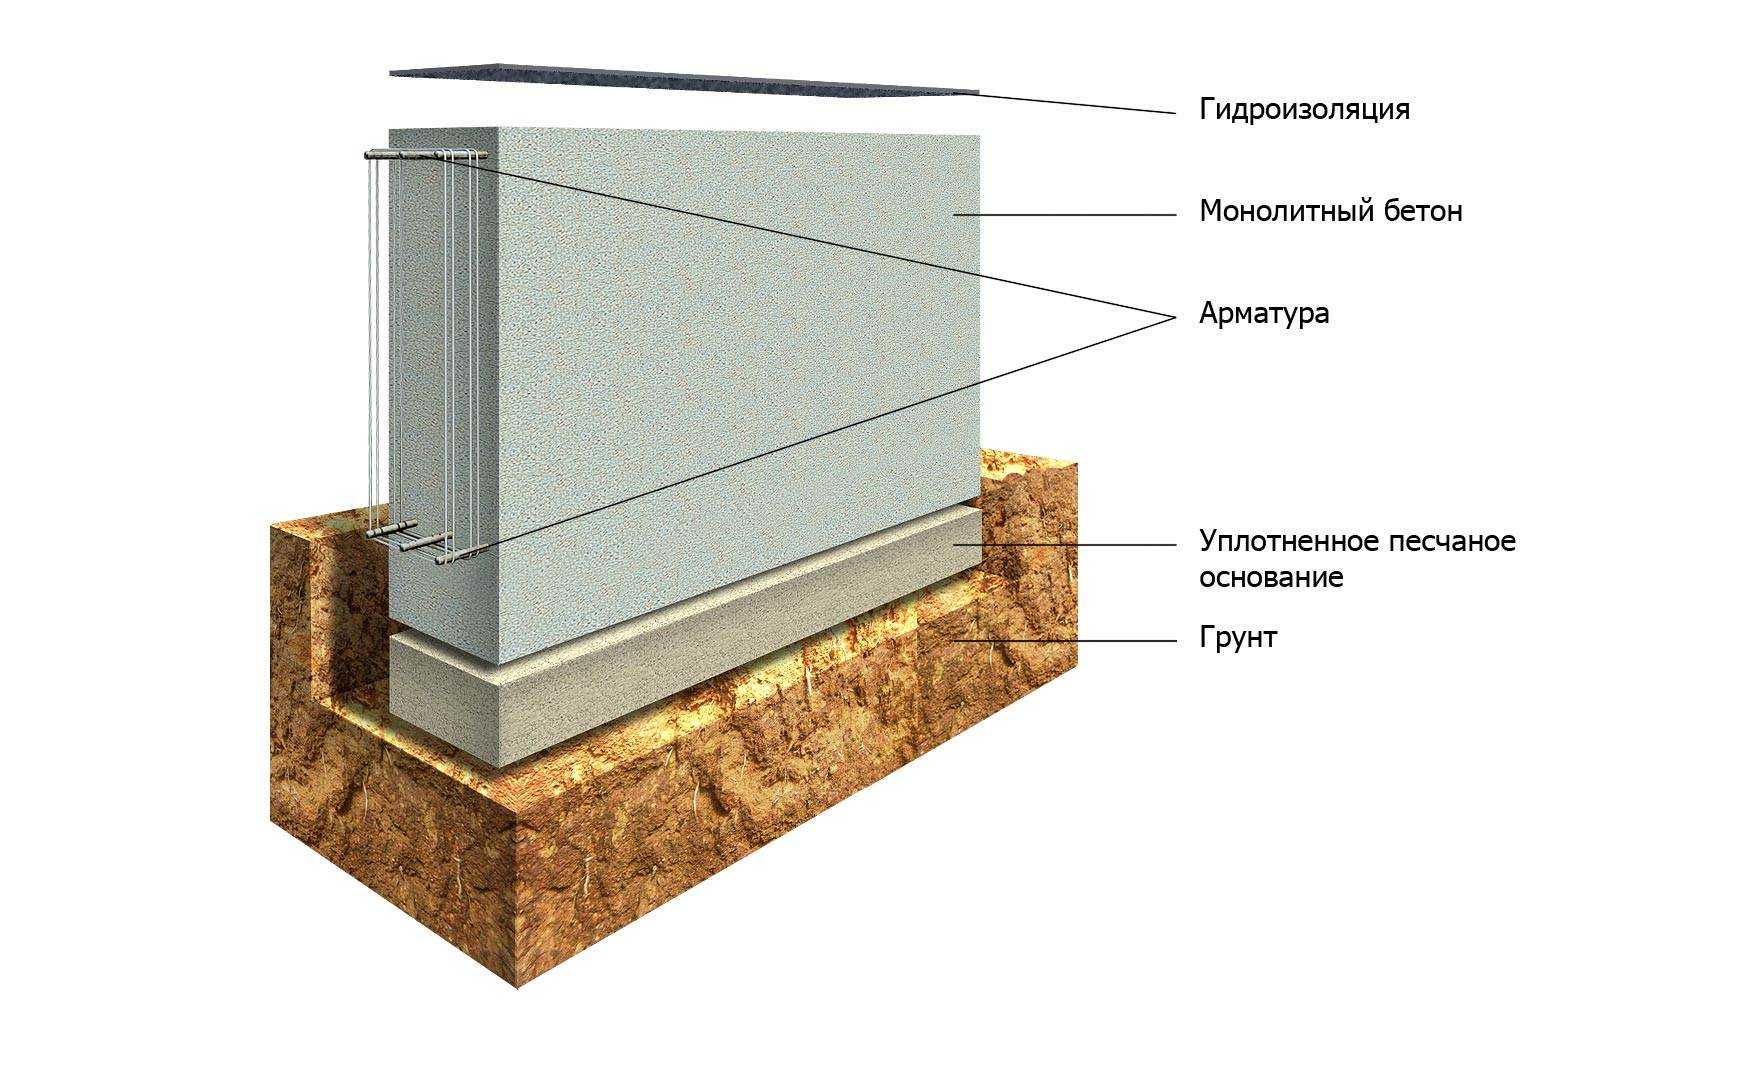 Какой должна быть плотность пеноблока для несущих стен. правильный подбор материала - самстрой - строительство, дизайн, архитектура.